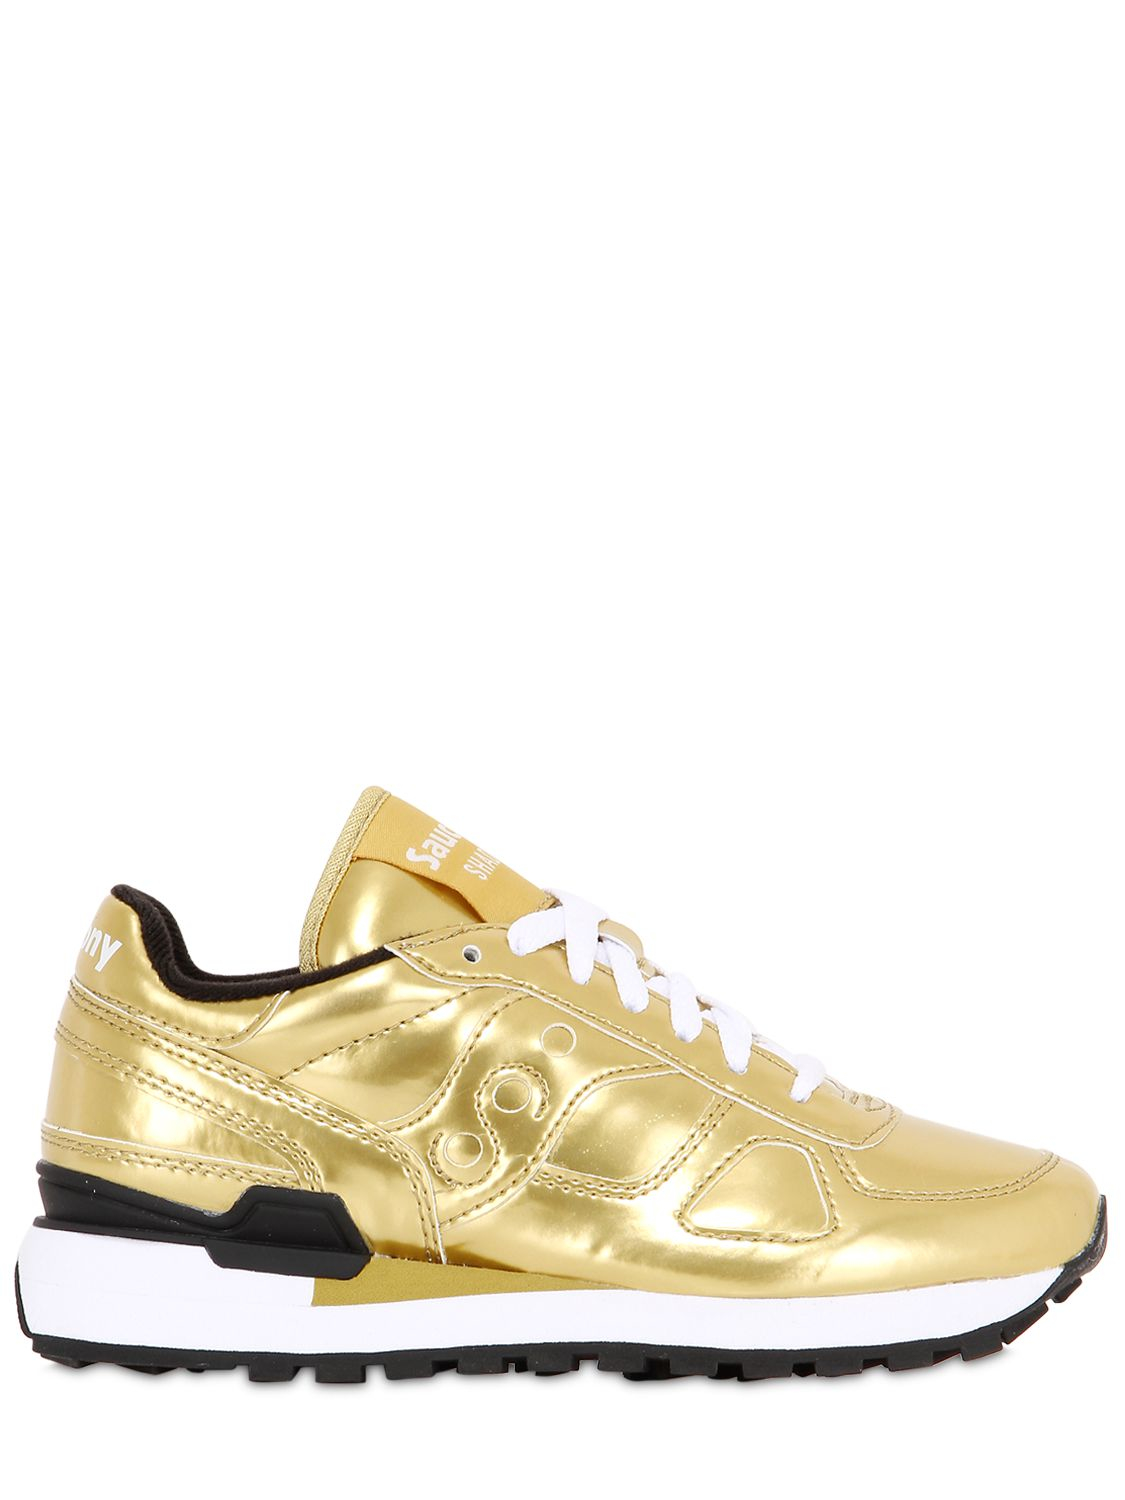 saucony gold shoes - sochim.com